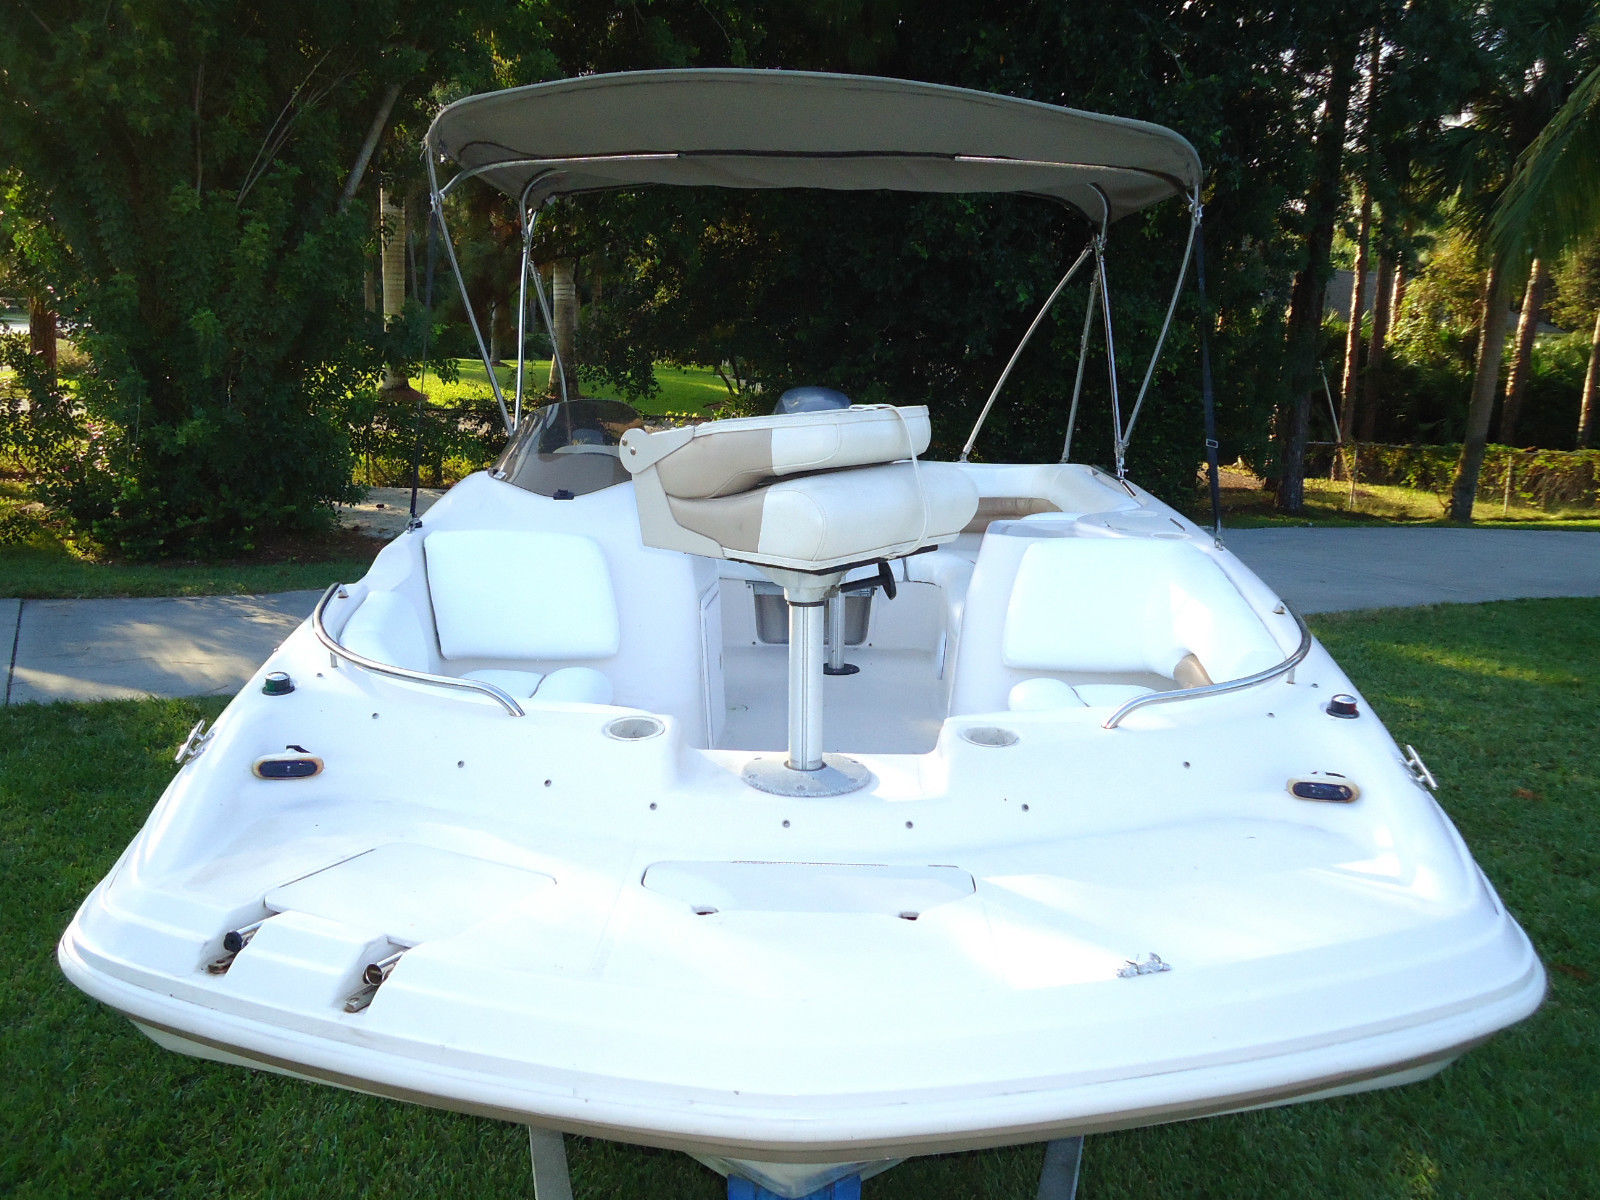 hurricane 188 ob sun deck sport 2014 for sale for $26,500